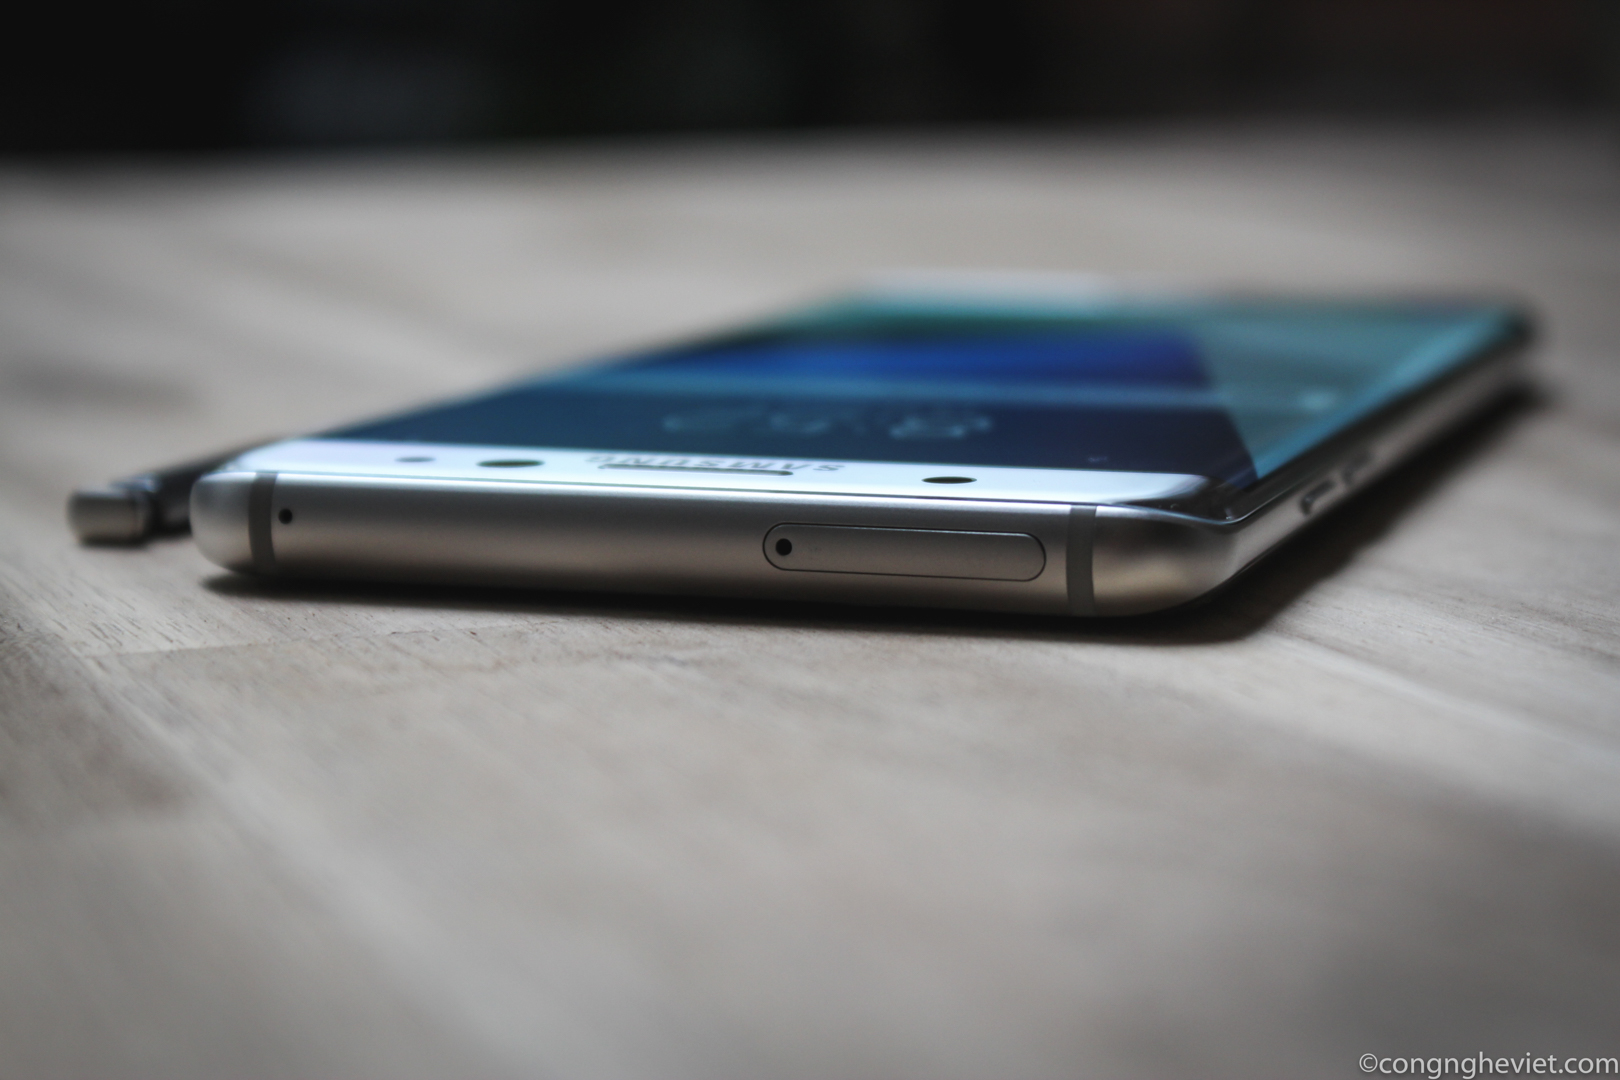 Màn hình cong trên điện thoại Samsung không phải chỉ để đẹp